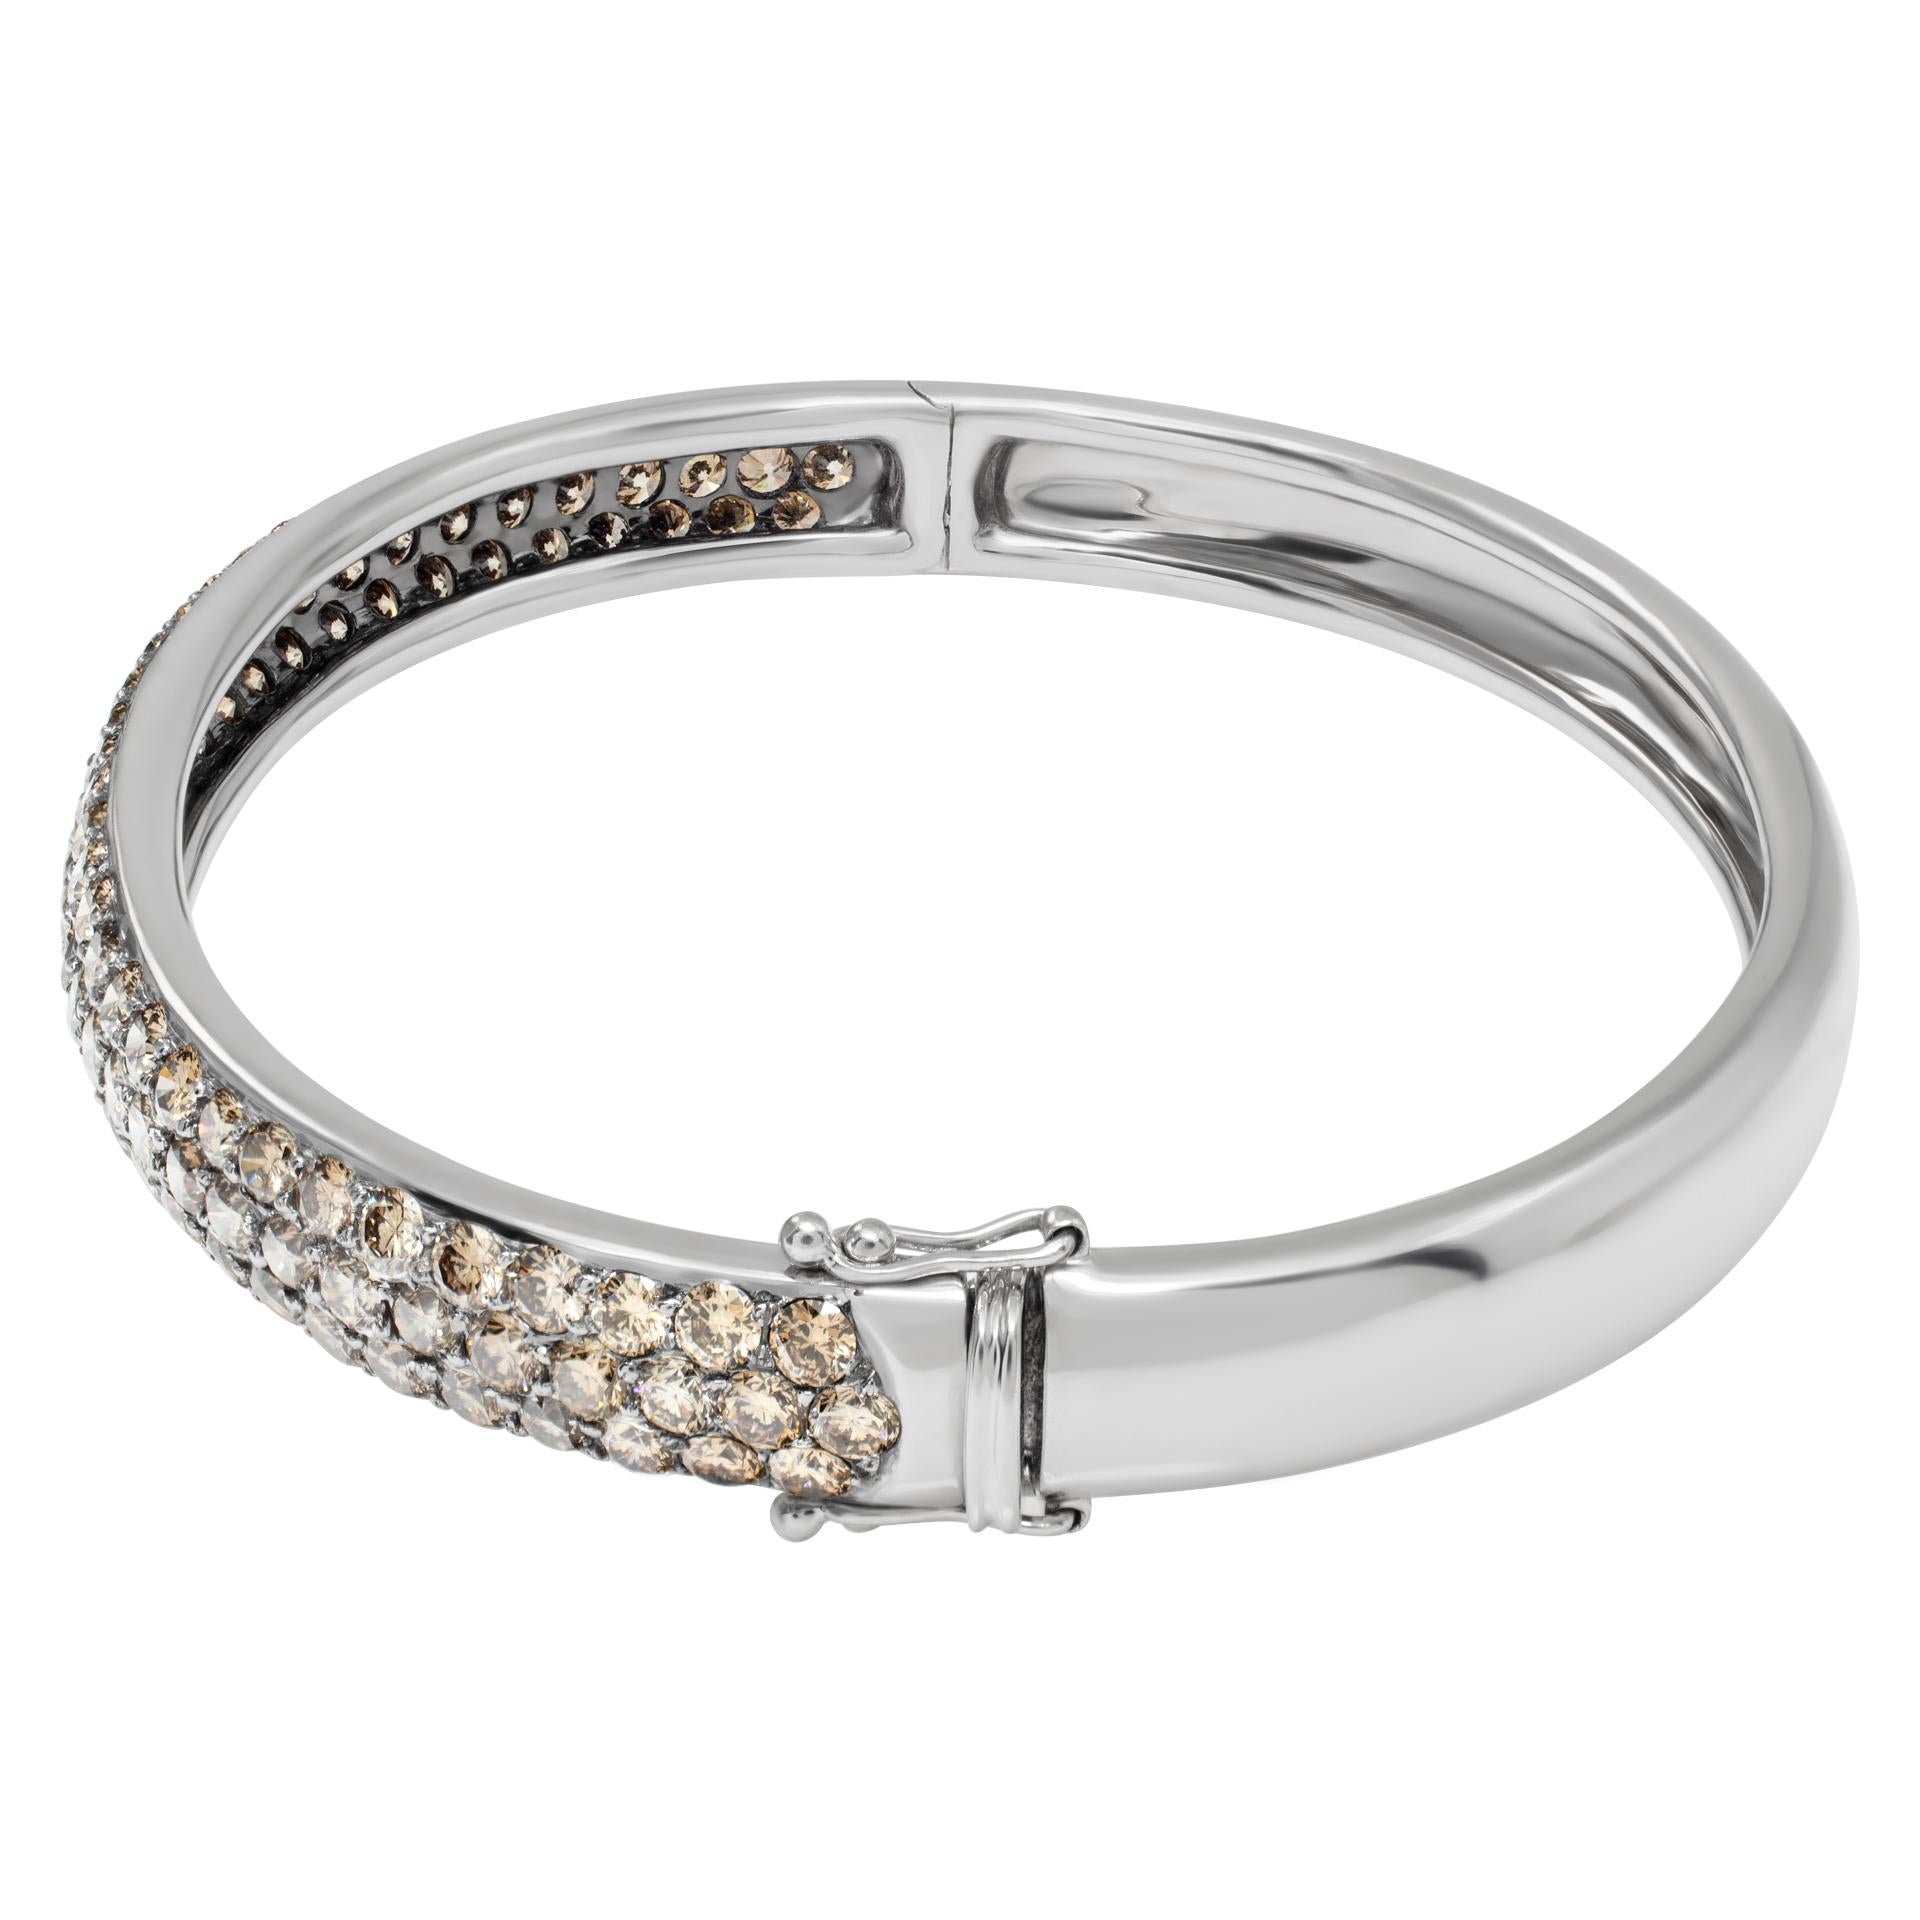 Bracelet avec diamants bruns en or blanc 18k avec environ 4 carats en brun.  diamants de couleur. Convient à un poignet de 6 à 7 pouces.
